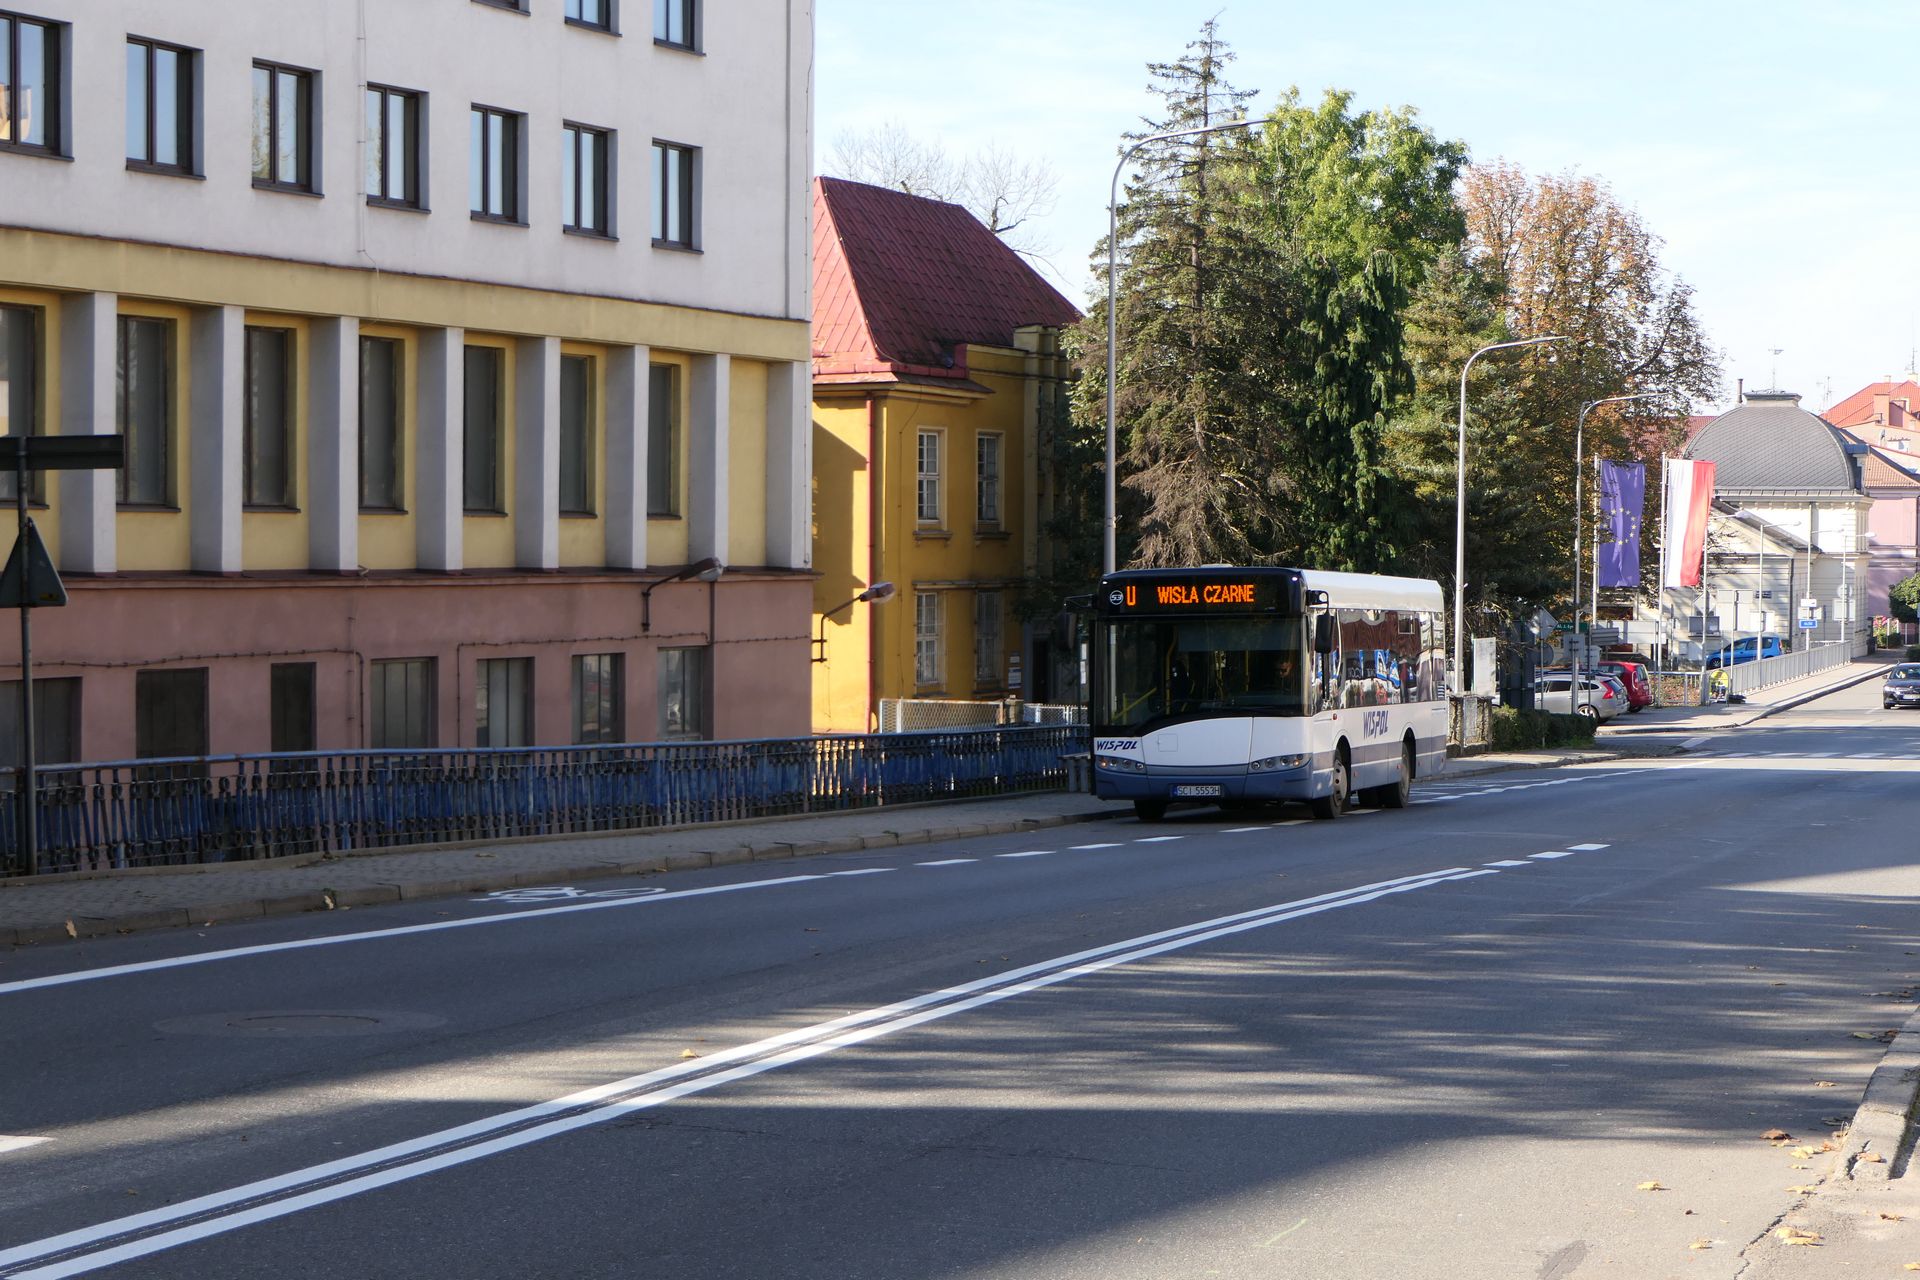 Pas dla rowerów jest współdzielony z przystankiem. Jeżeli w tym miejscu rowerzysta napotka autobus, powinien go ominąć zachowując szczególną ostrożność.